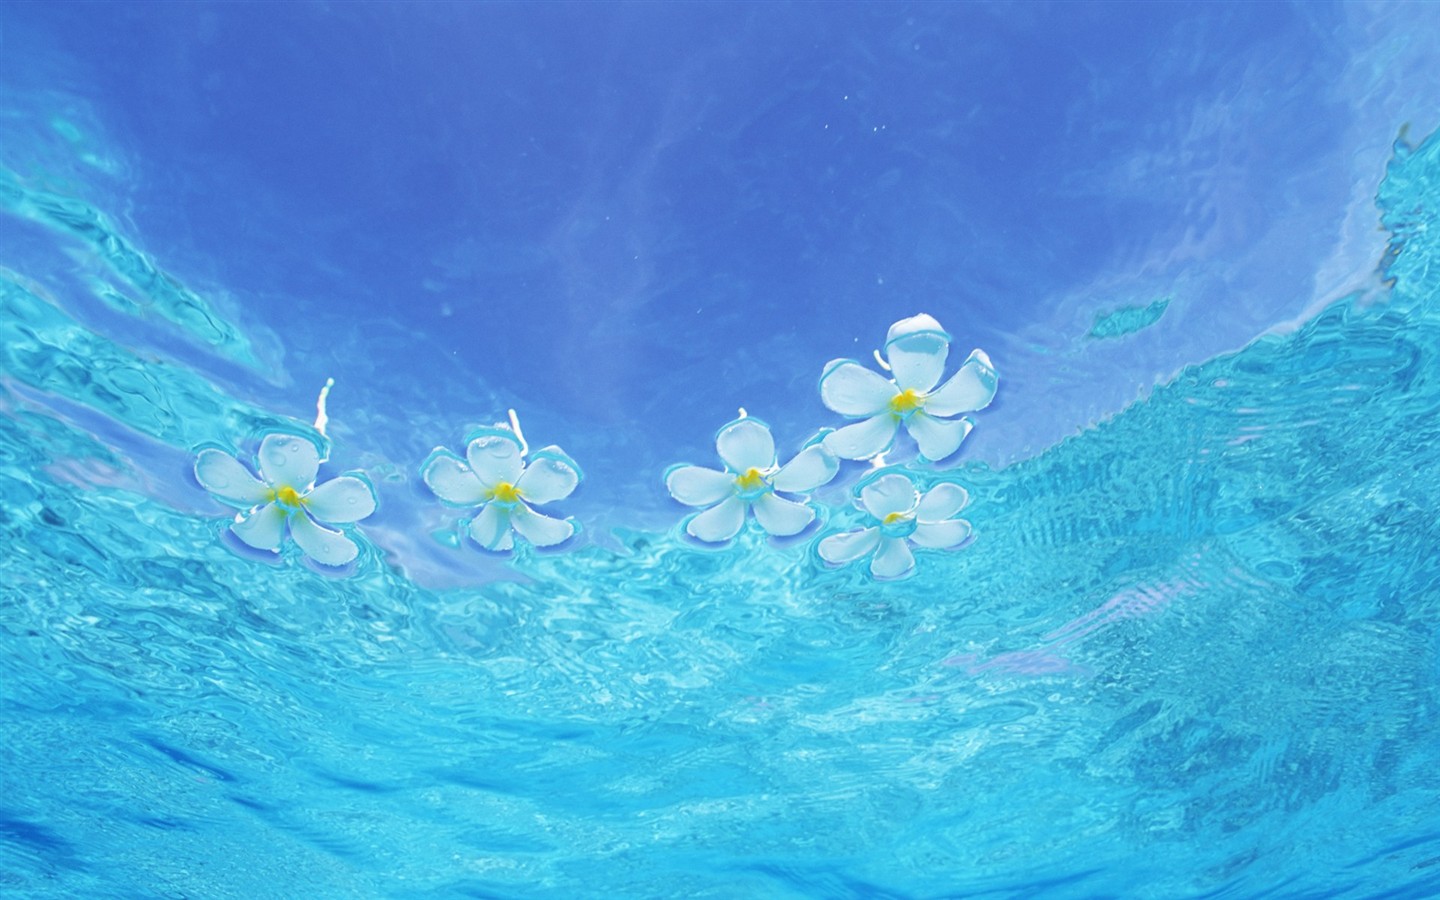 Maledivy vody a modrou oblohu #11 - 1440x900